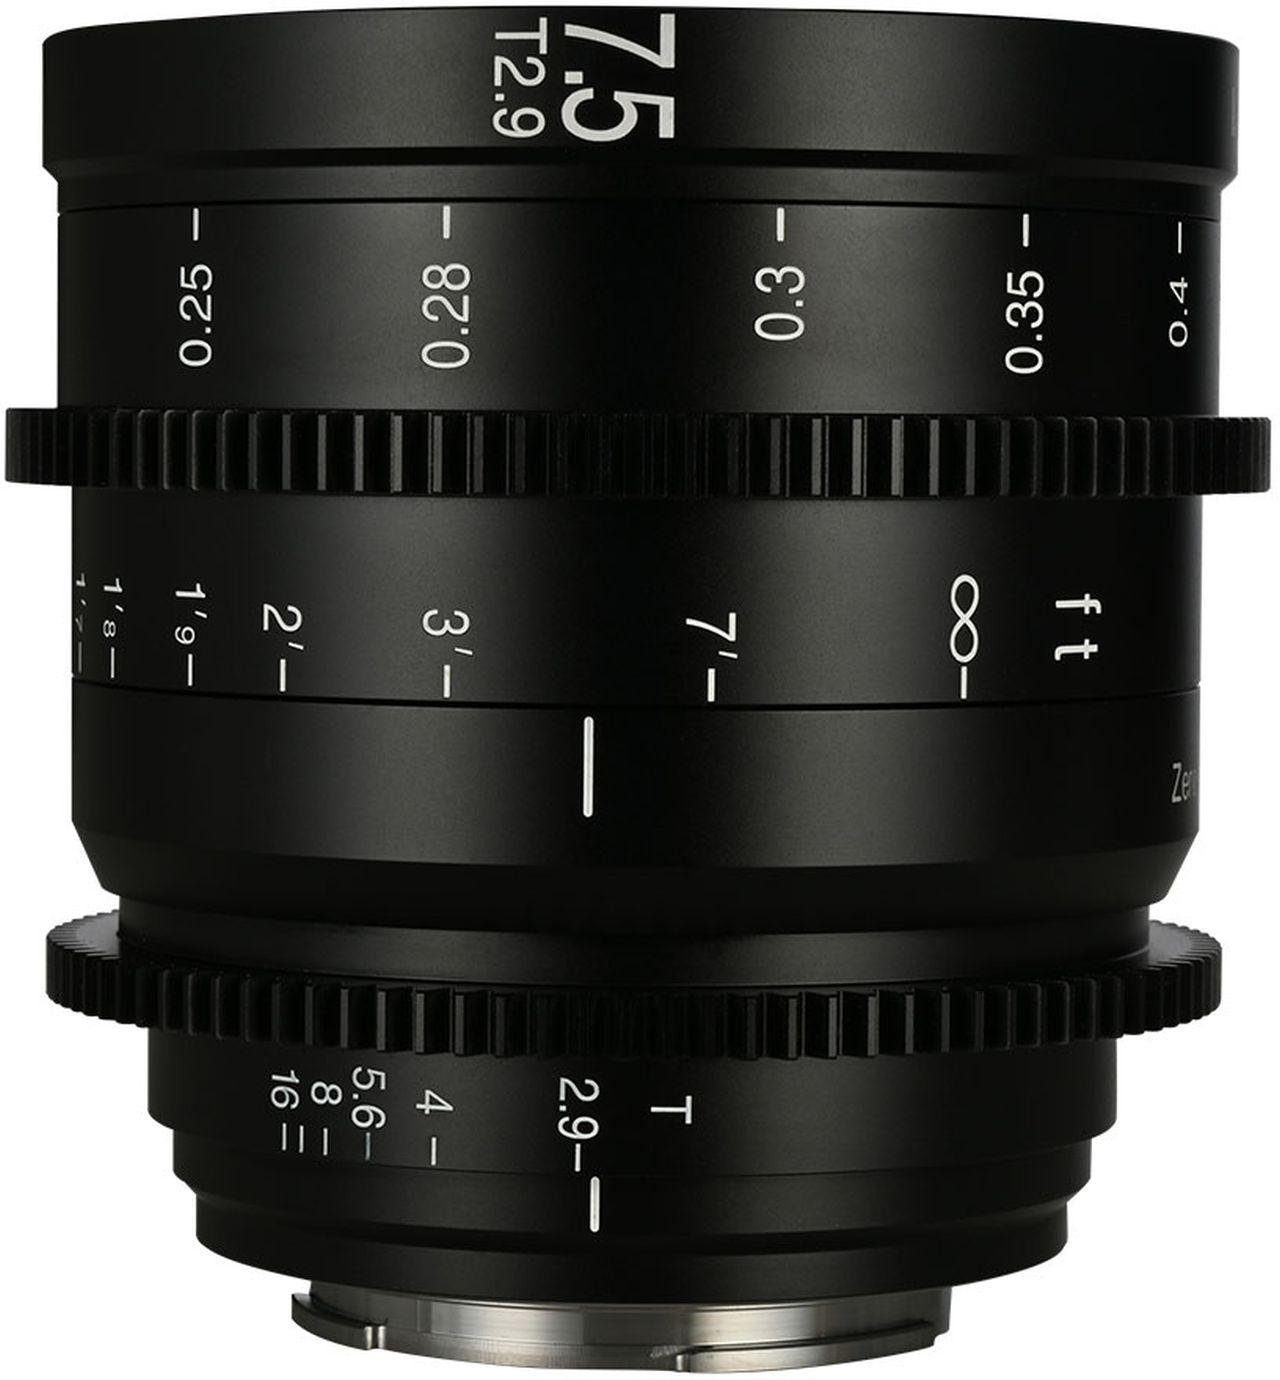 LAOWA 7,5mm f2,9 Zero-D S35 Cine für Sony-E Objektiv